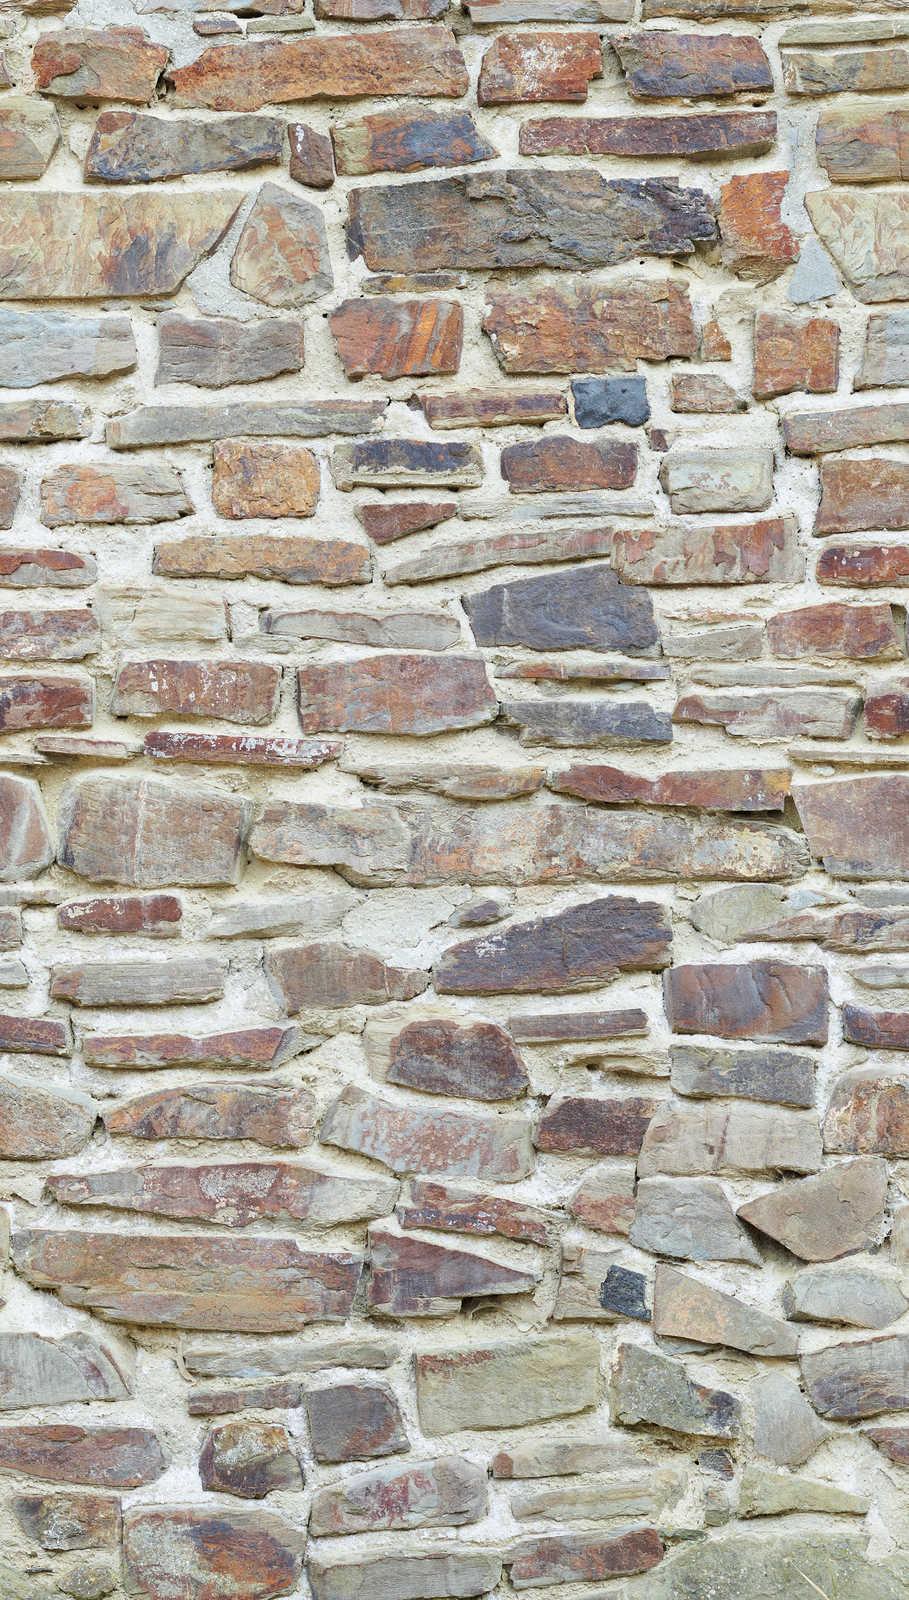             Klassische Steinwandoptik Tapete in hellen Farben – Beige, Braun, Creme
        